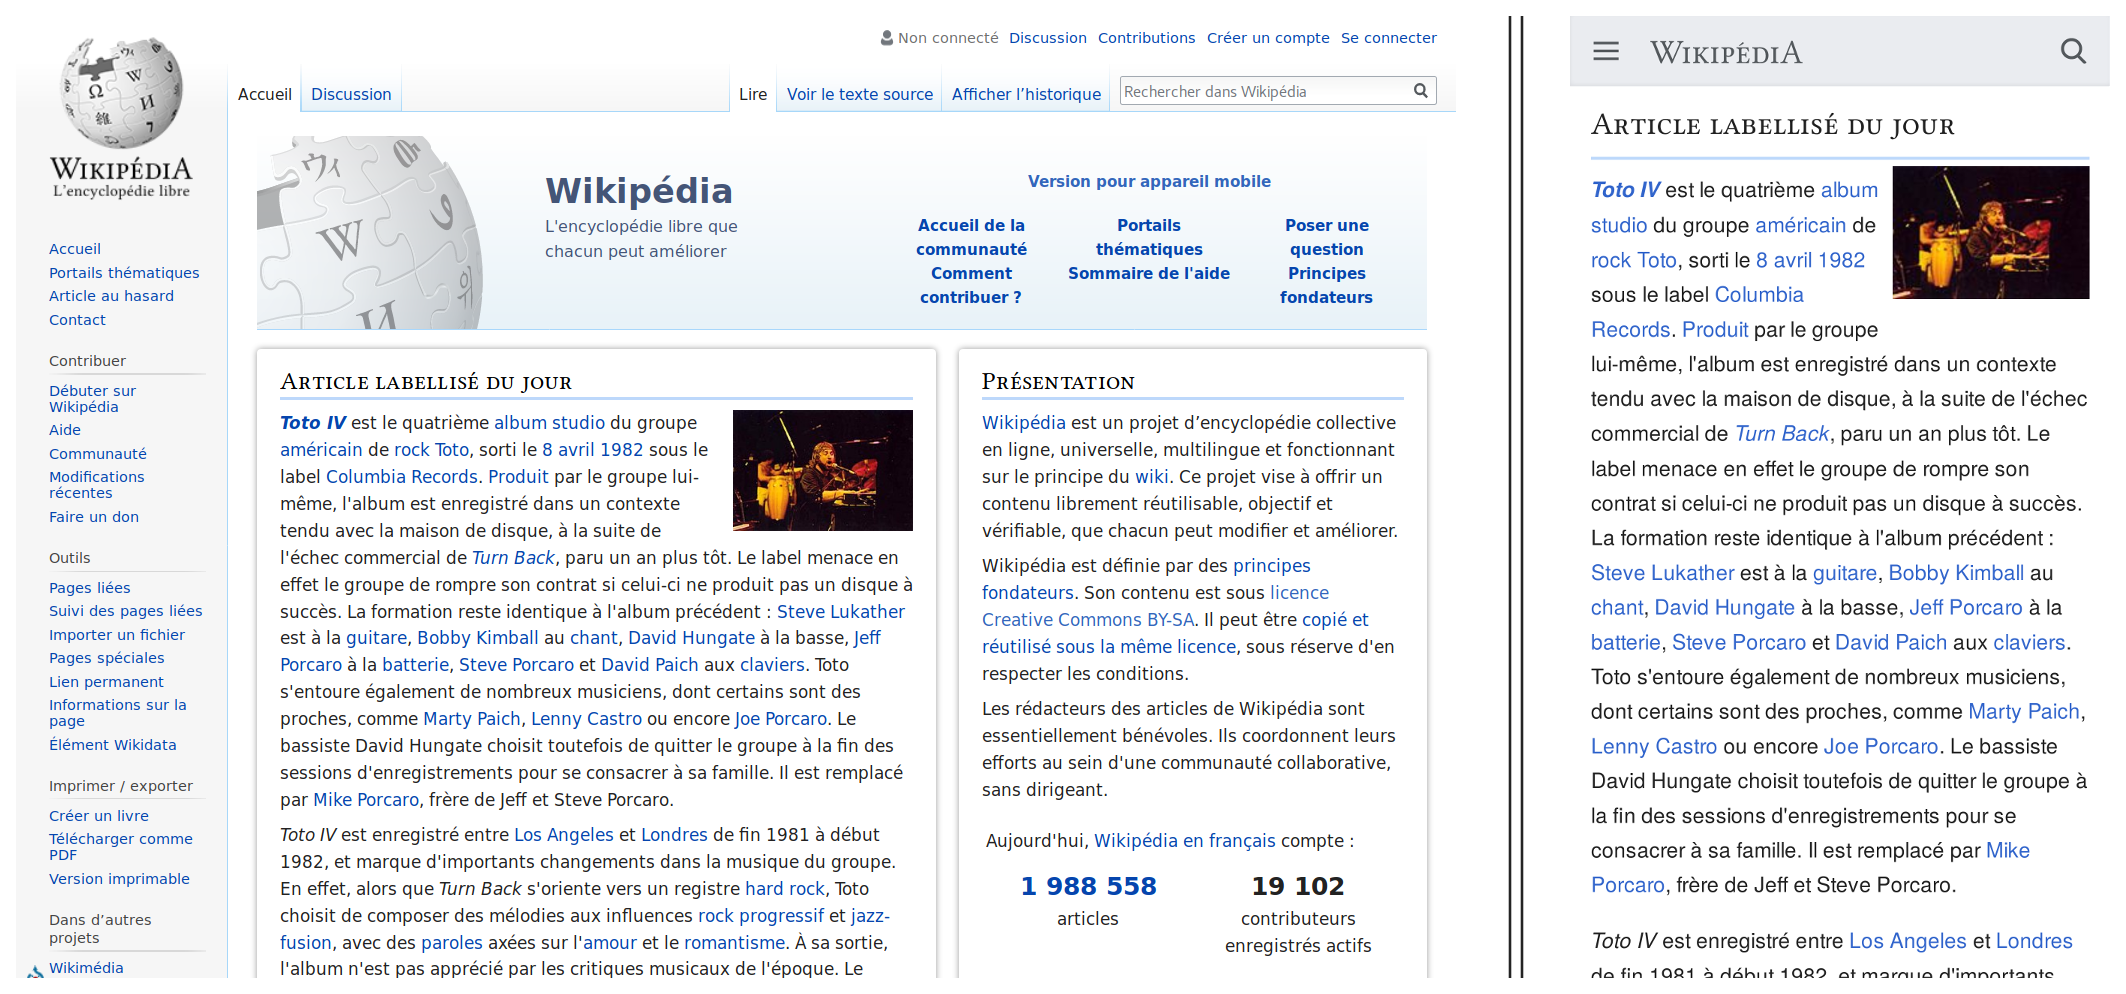 Différence entre l'affichage de Wikipédia sur un écran d'ordinateur et un téléphone portable